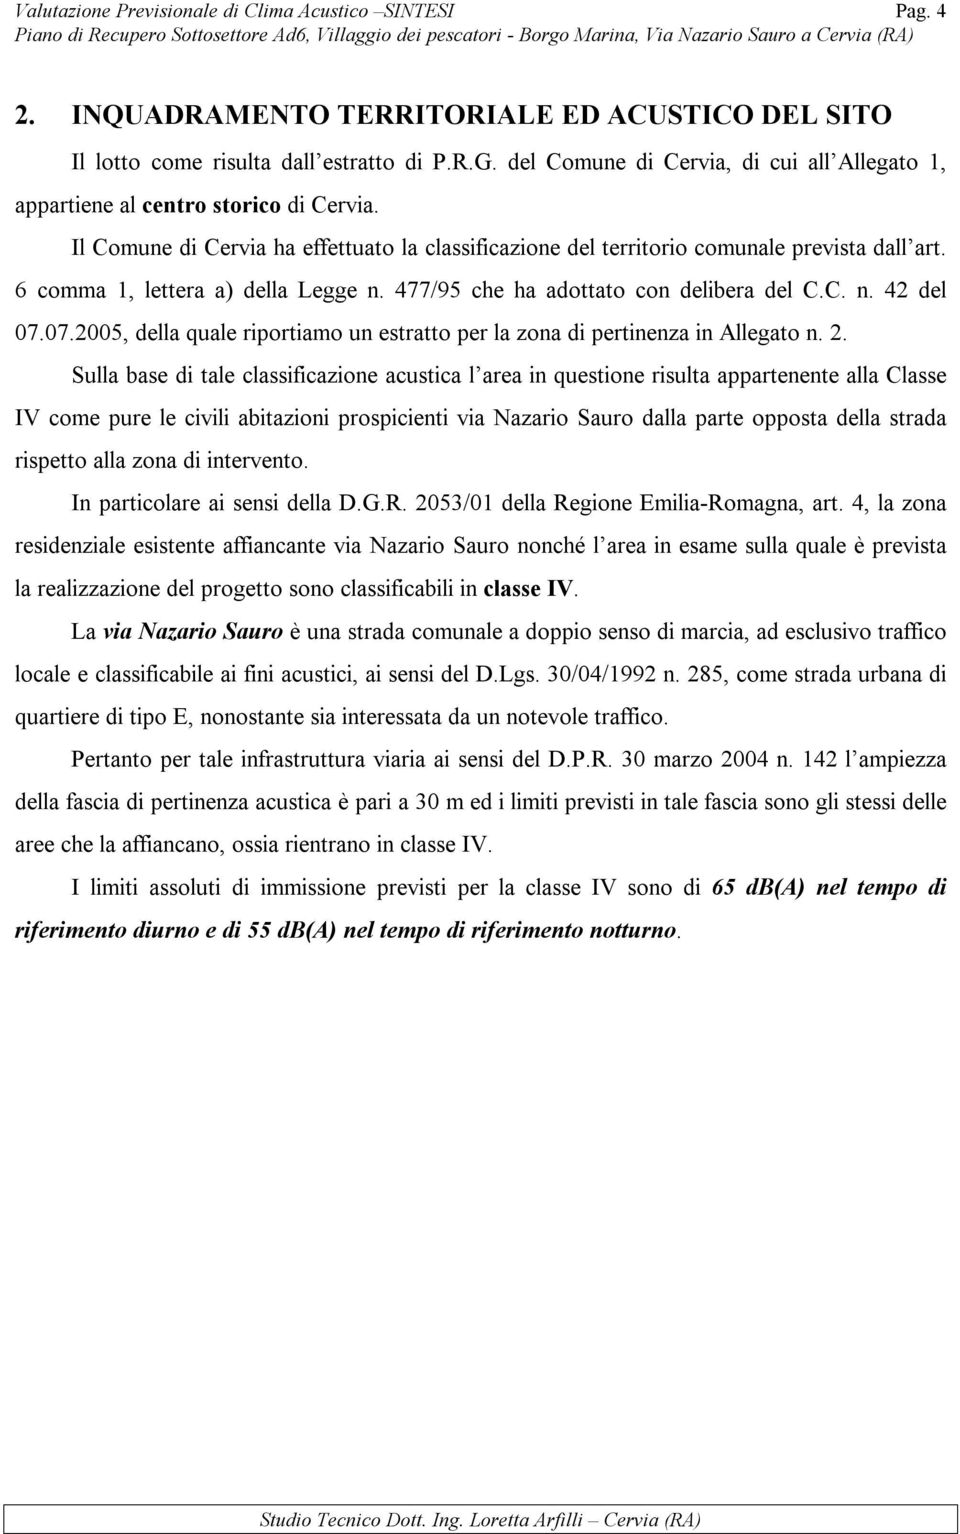 Il Comune di Cervia ha effettuato la classificazione del territorio comunale prevista dall art. 6 comma 1, lettera a) della Legge n. 477/95 che ha adottato con delibera del C.C. n. 42 del 07.